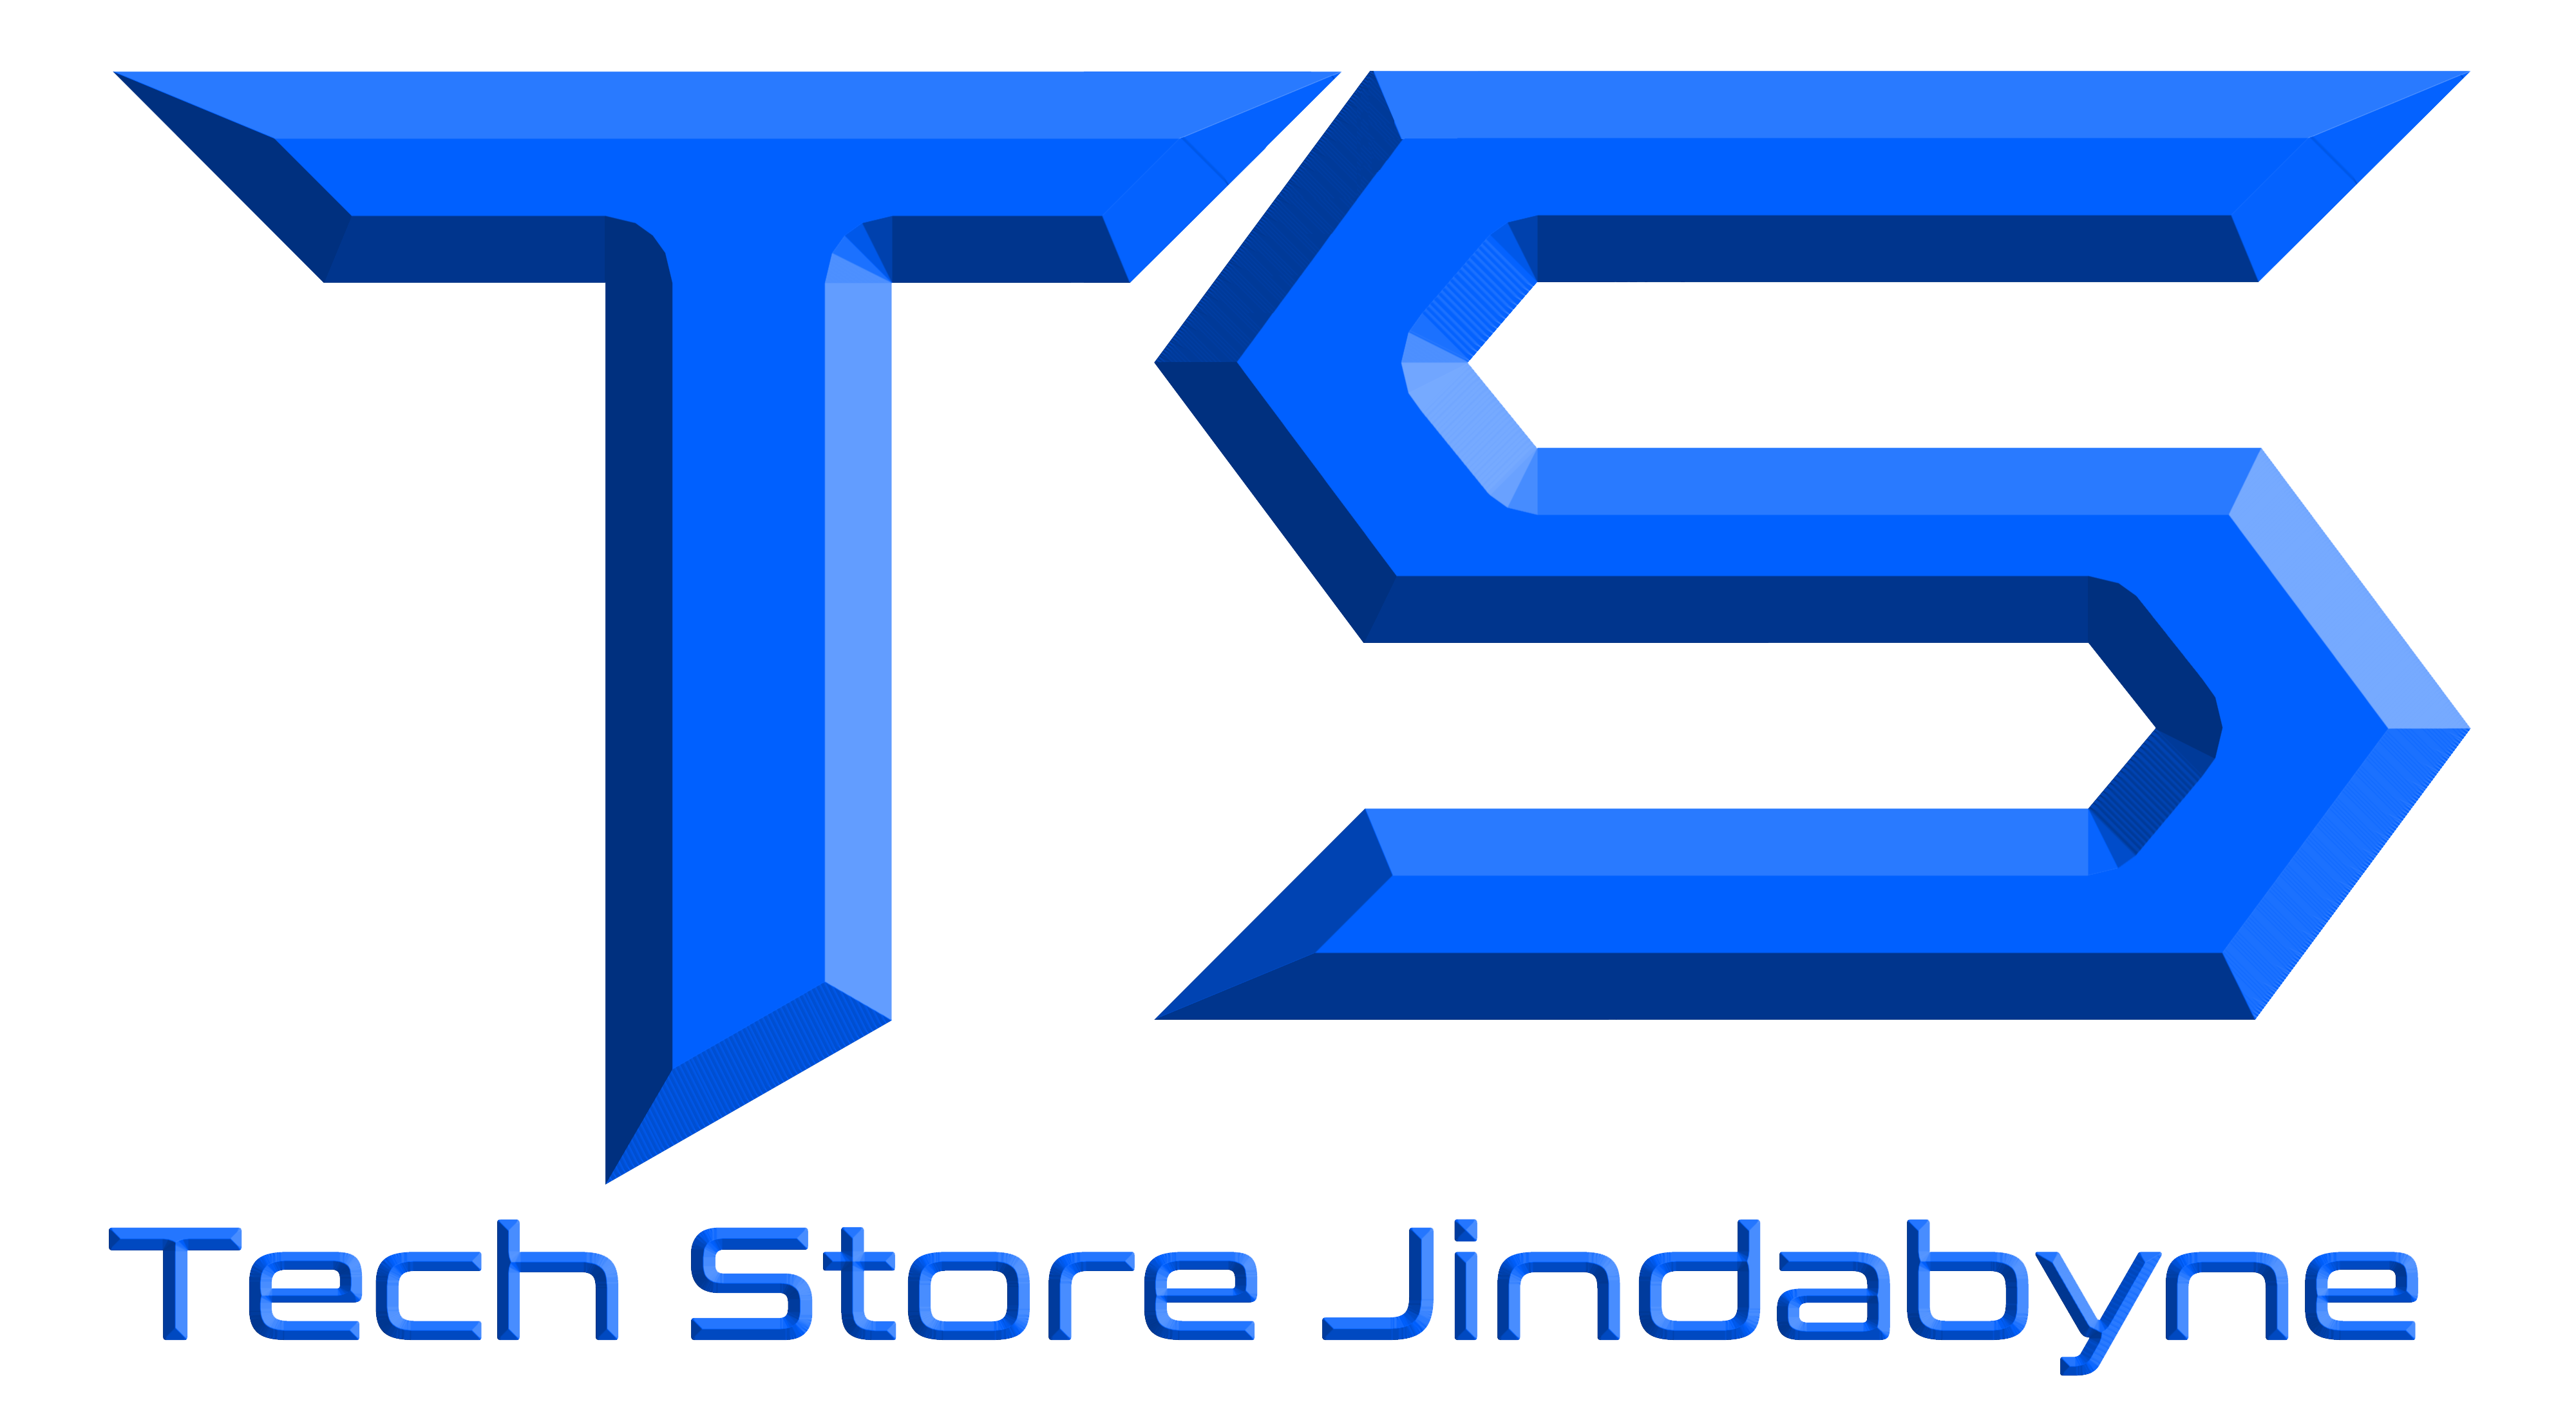 Snowy Mountains Tech Store Jindabyne